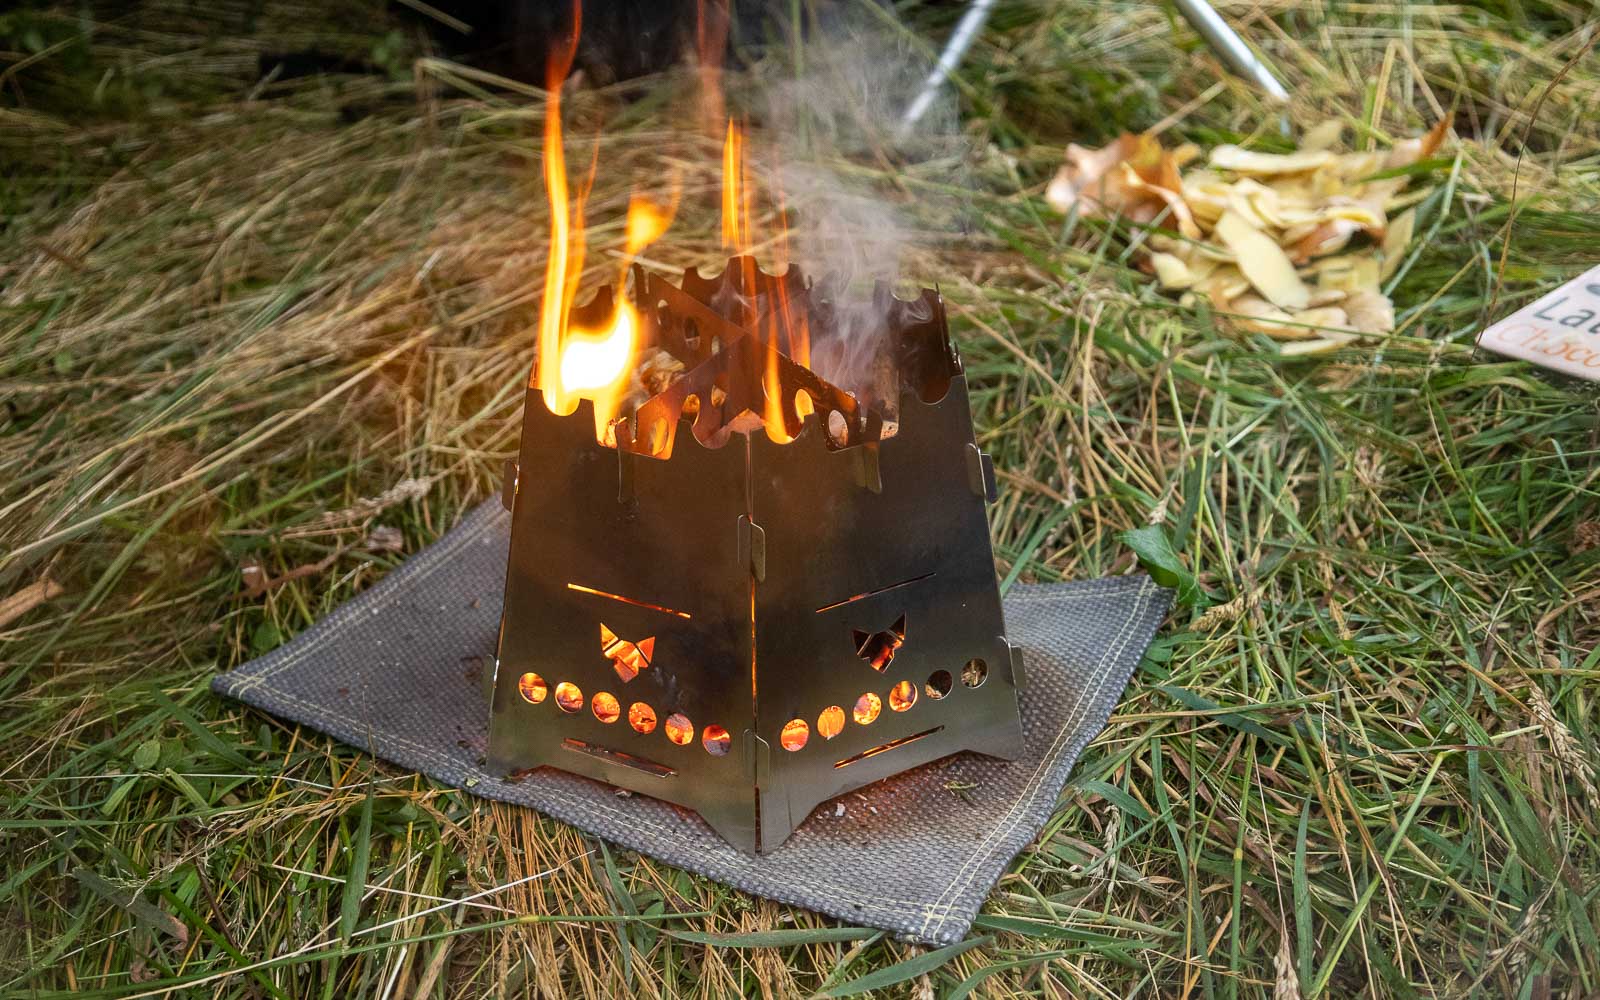 Der Hobokocher FENNEK Basic mit Erweiterungsset mit Flammen darin auf einer Hitzeschutzmatte im Gras